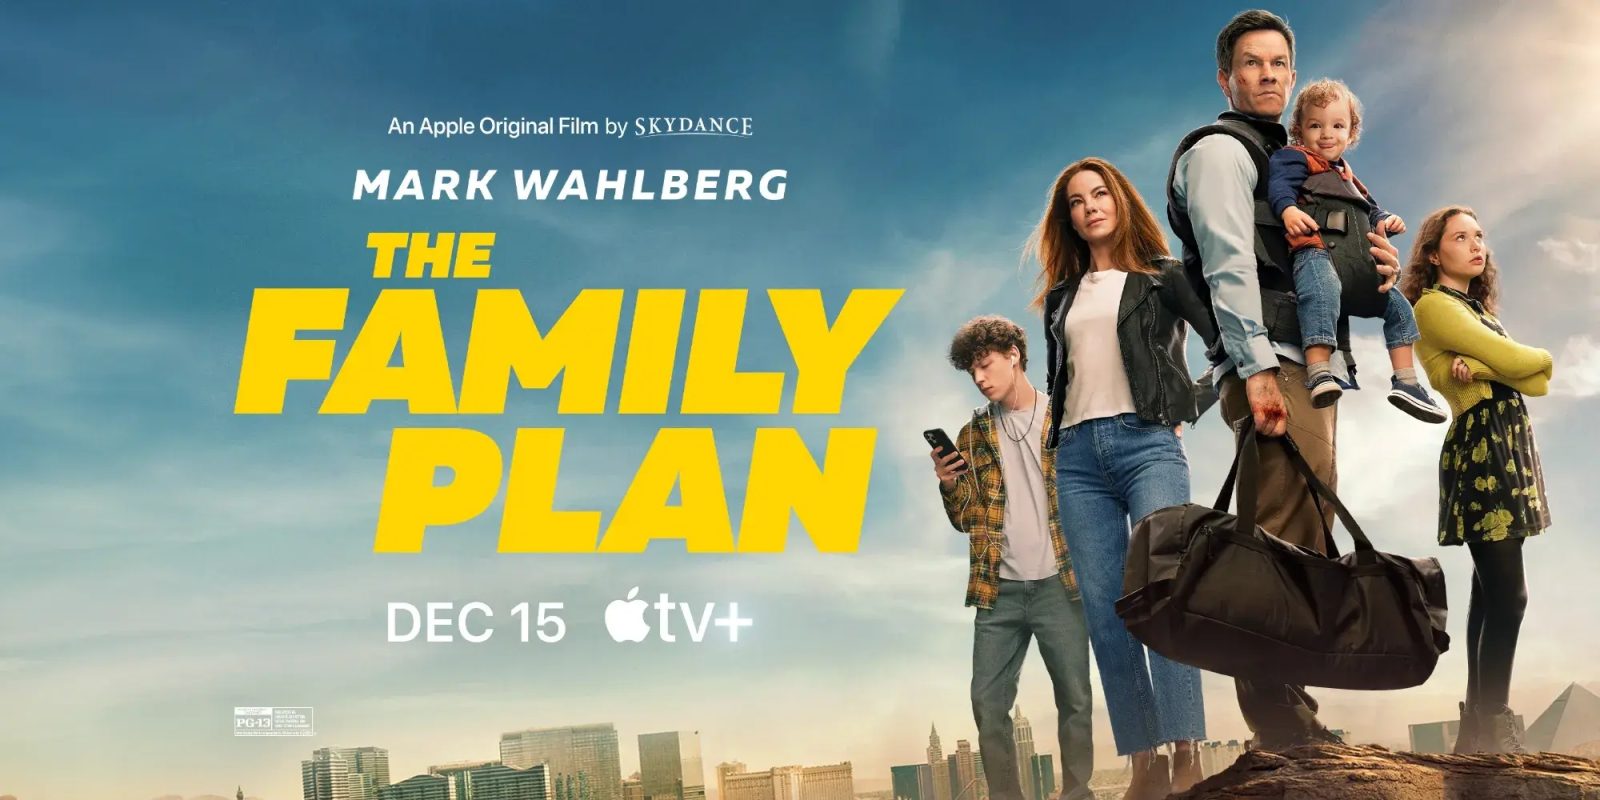 Apple анонсирует новый фильм «Семейный план» с Марком Уолбергом в главной роли, который выйдет в эфир к Рождеству